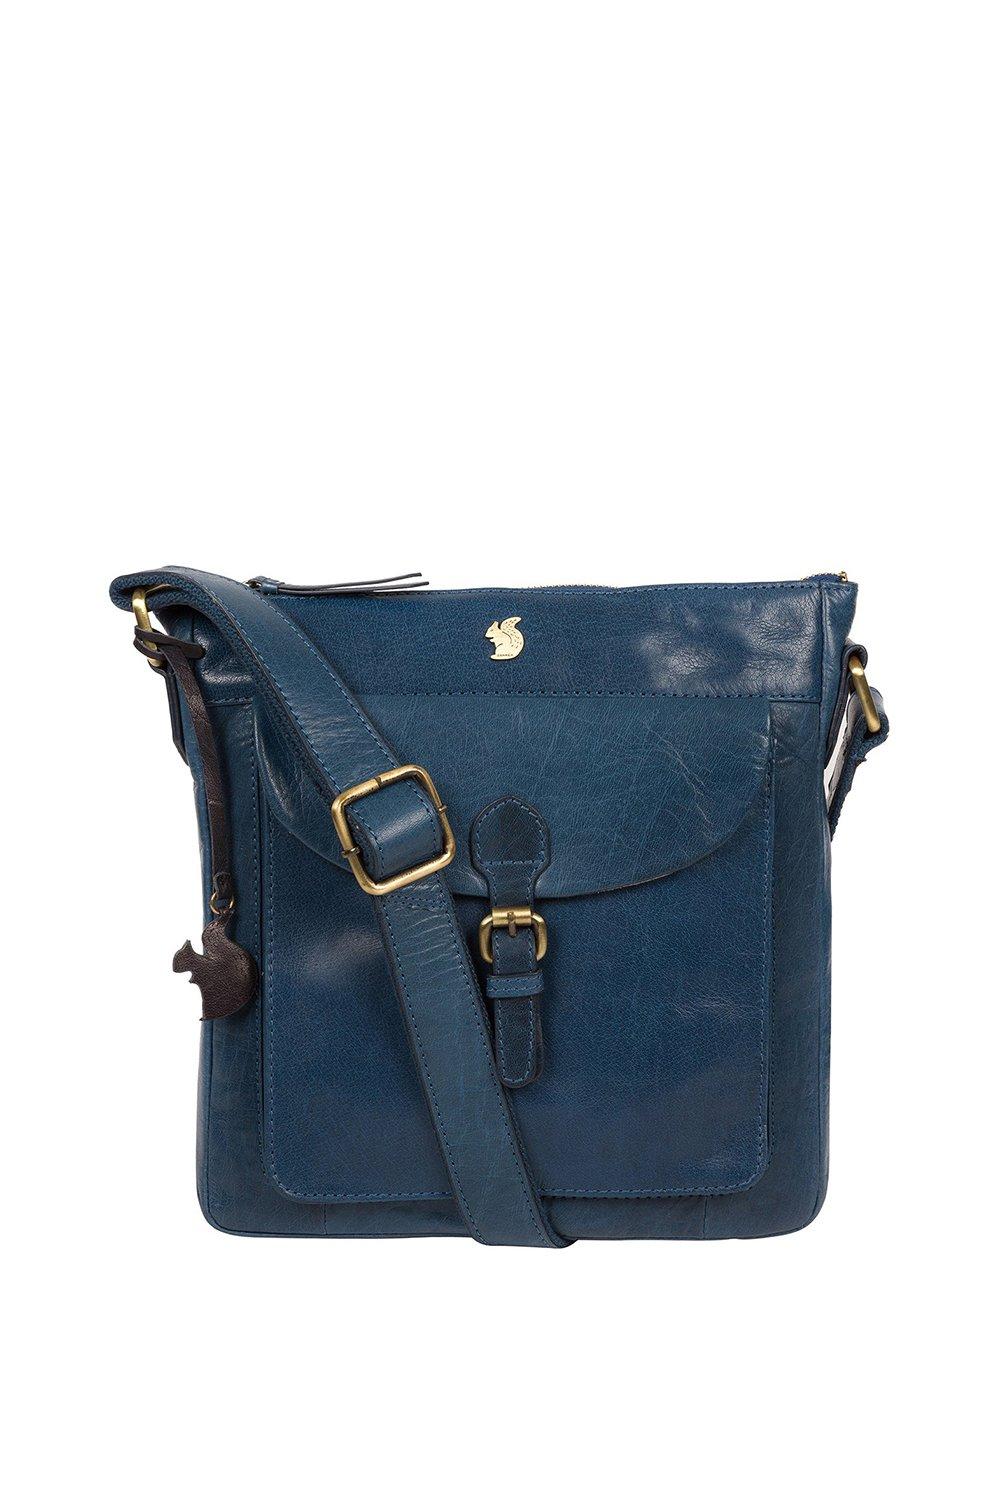 Кожаная сумка через плечо 'Josephine' Conkca London, синий